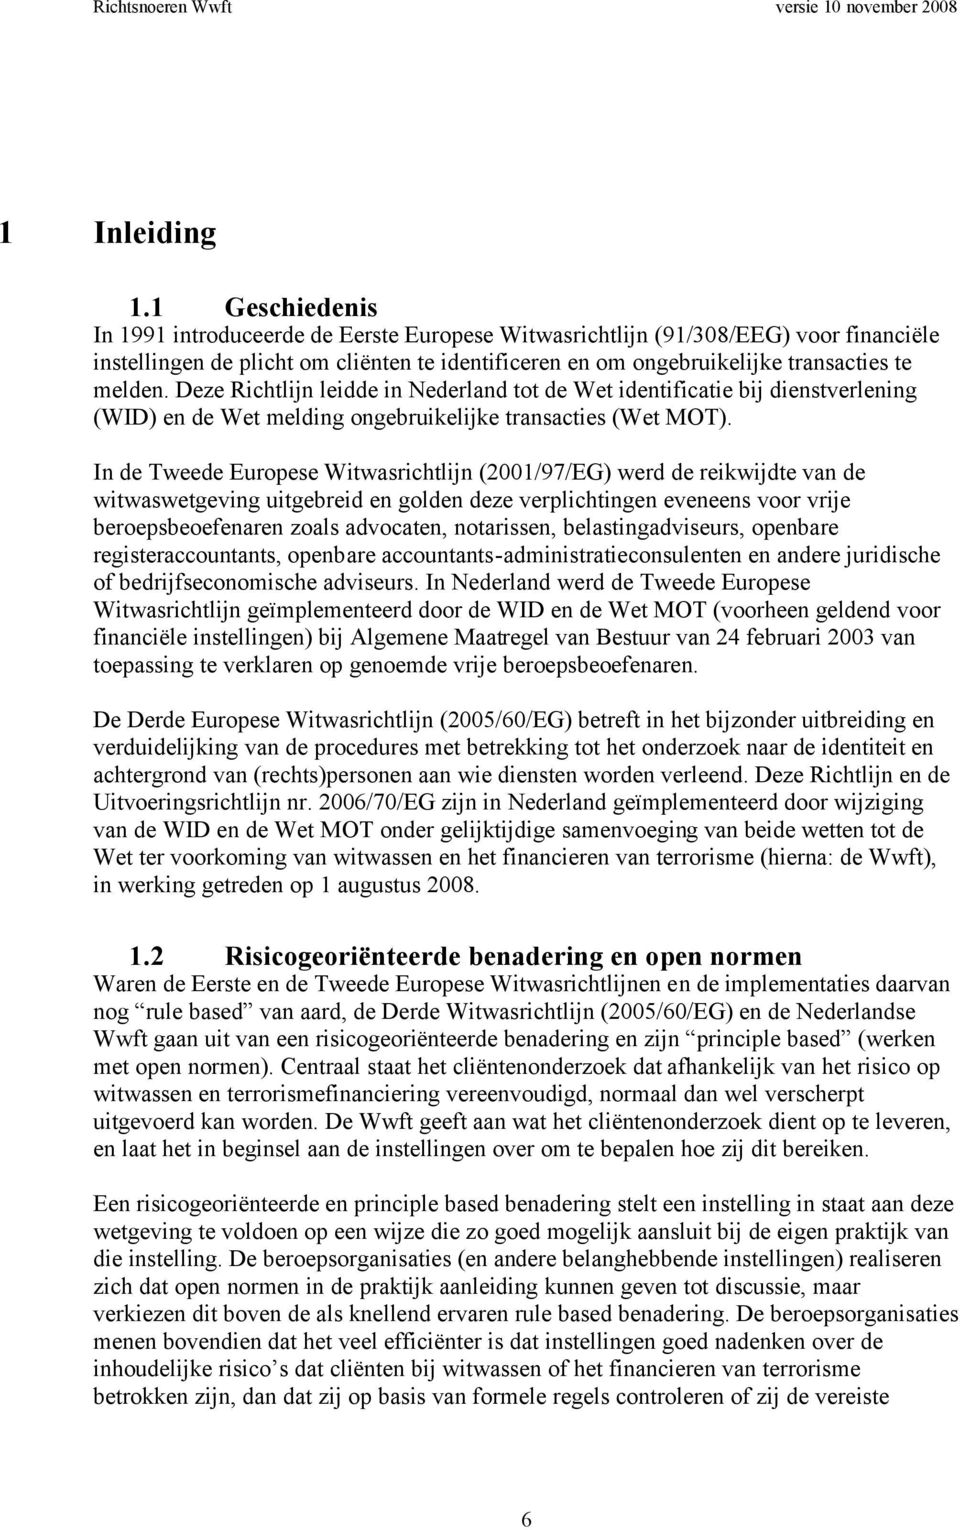 Deze Richtlijn leidde in Nederland tot de Wet identificatie bij dienstverlening (WID) en de Wet melding ongebruikelijke transacties (Wet MOT).